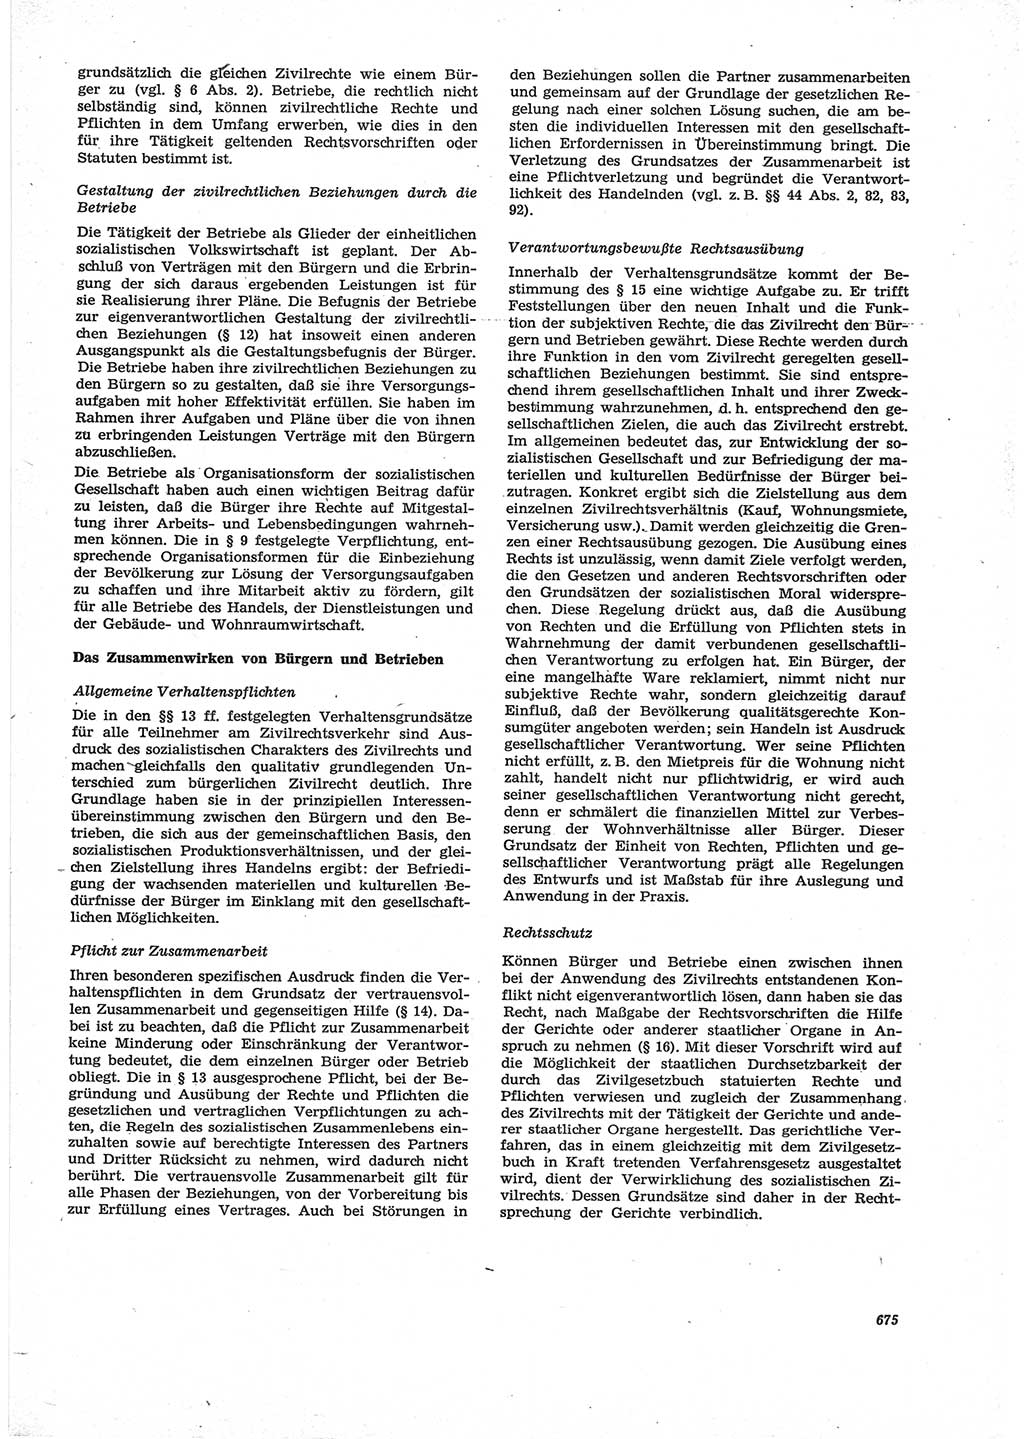 Neue Justiz (NJ), Zeitschrift für Recht und Rechtswissenschaft [Deutsche Demokratische Republik (DDR)], 28. Jahrgang 1974, Seite 675 (NJ DDR 1974, S. 675)